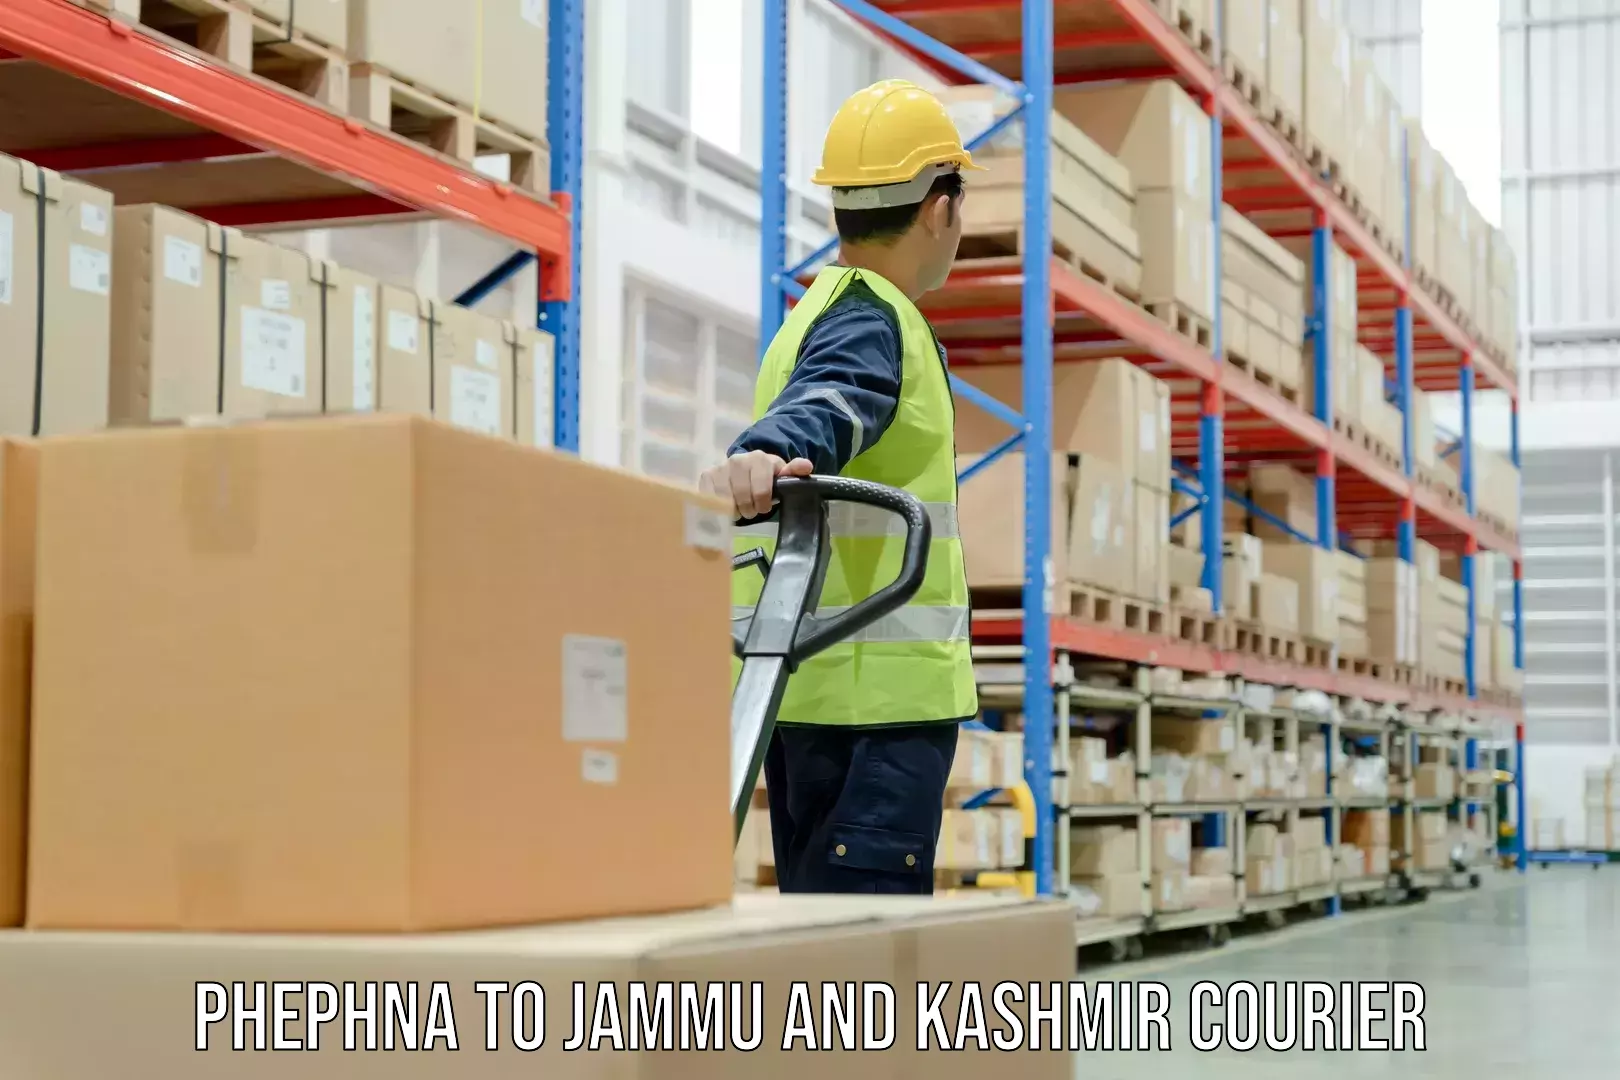 Business shipping needs Phephna to Kupwara